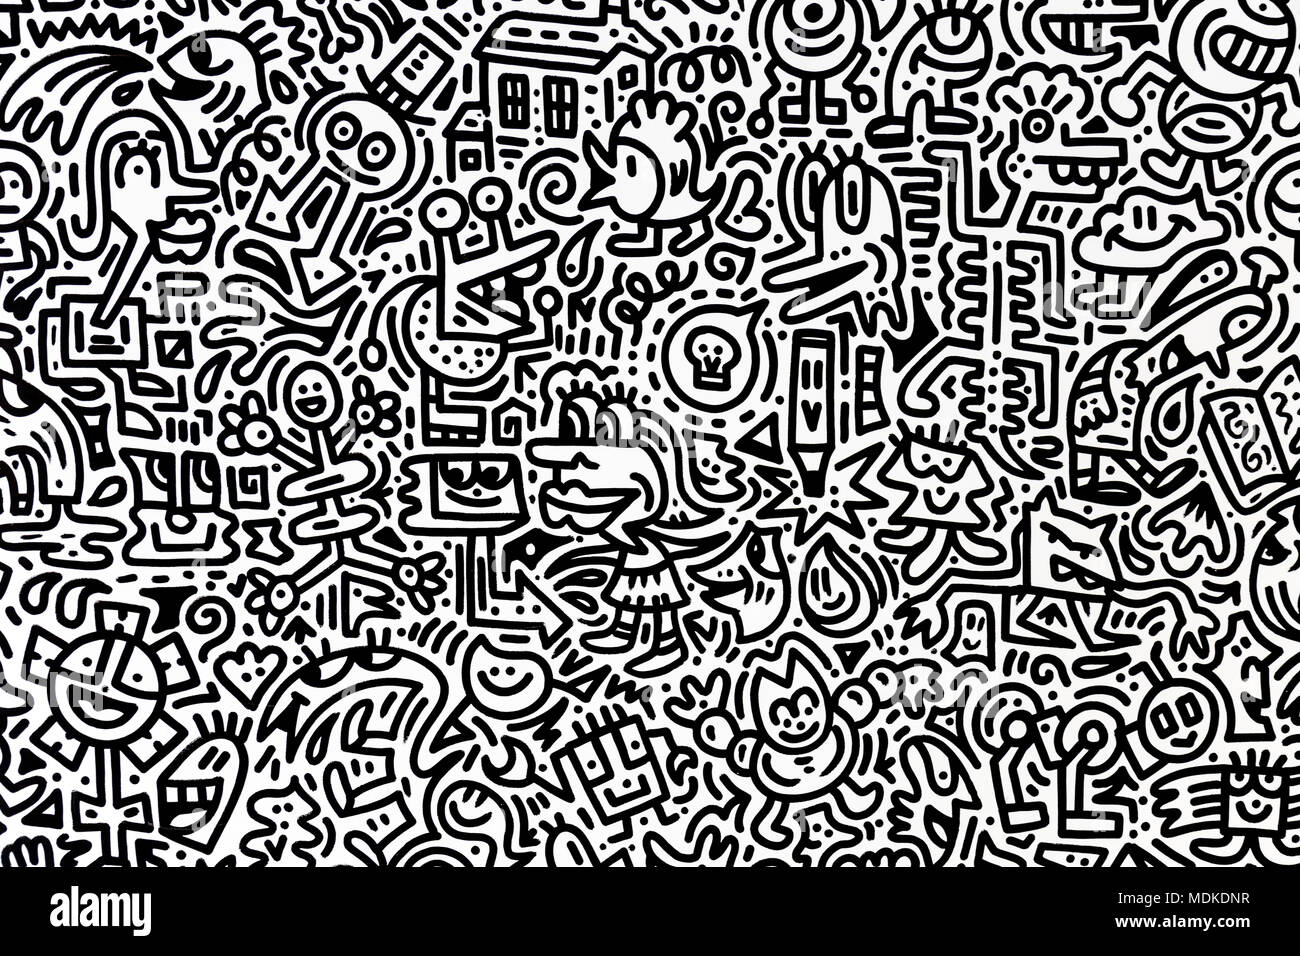 La Chambre par M. Doodle Doodle en noir et blanc à la graffiti "sens de l'espace" dans l'installation de Exchange Square, Liverpool Street, London, UK Banque D'Images